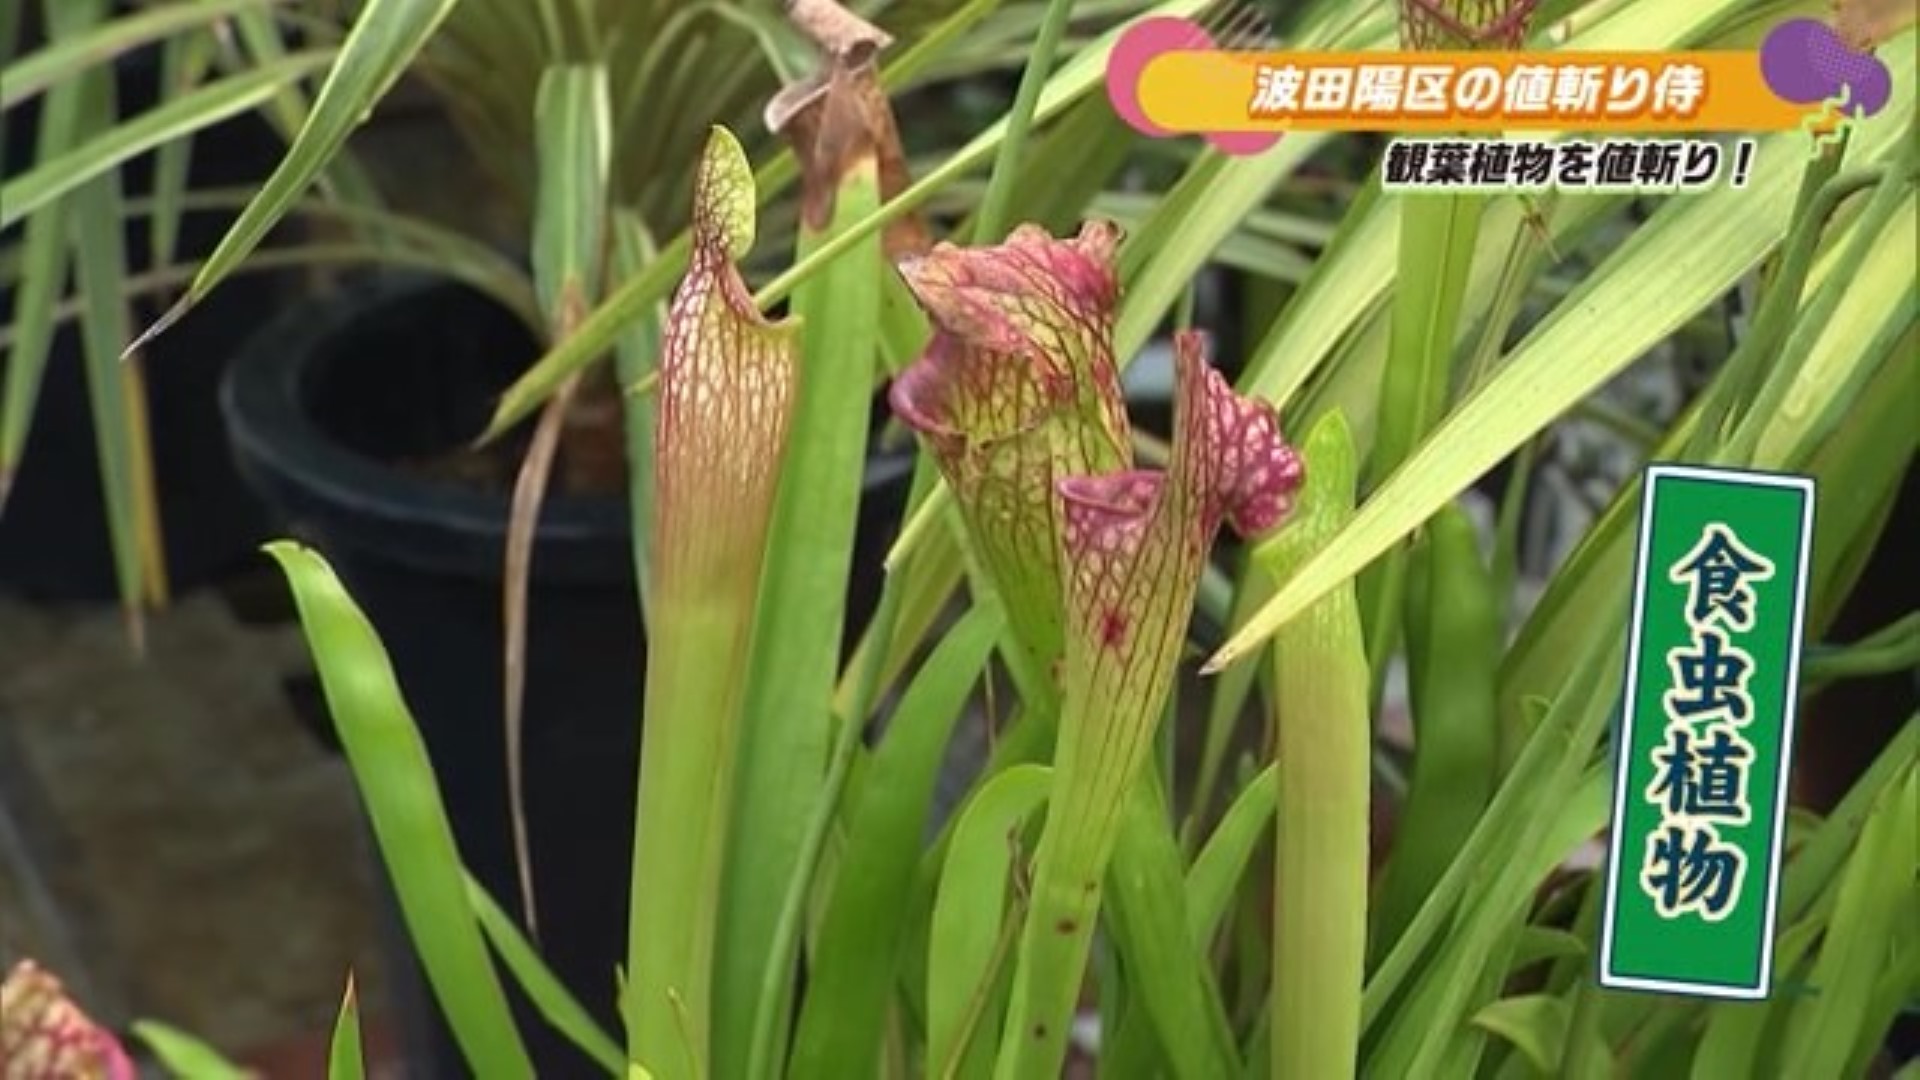 品揃えは"九州最大級" 珍しい植物も揃う花屋 白石町「フラワーウッド」